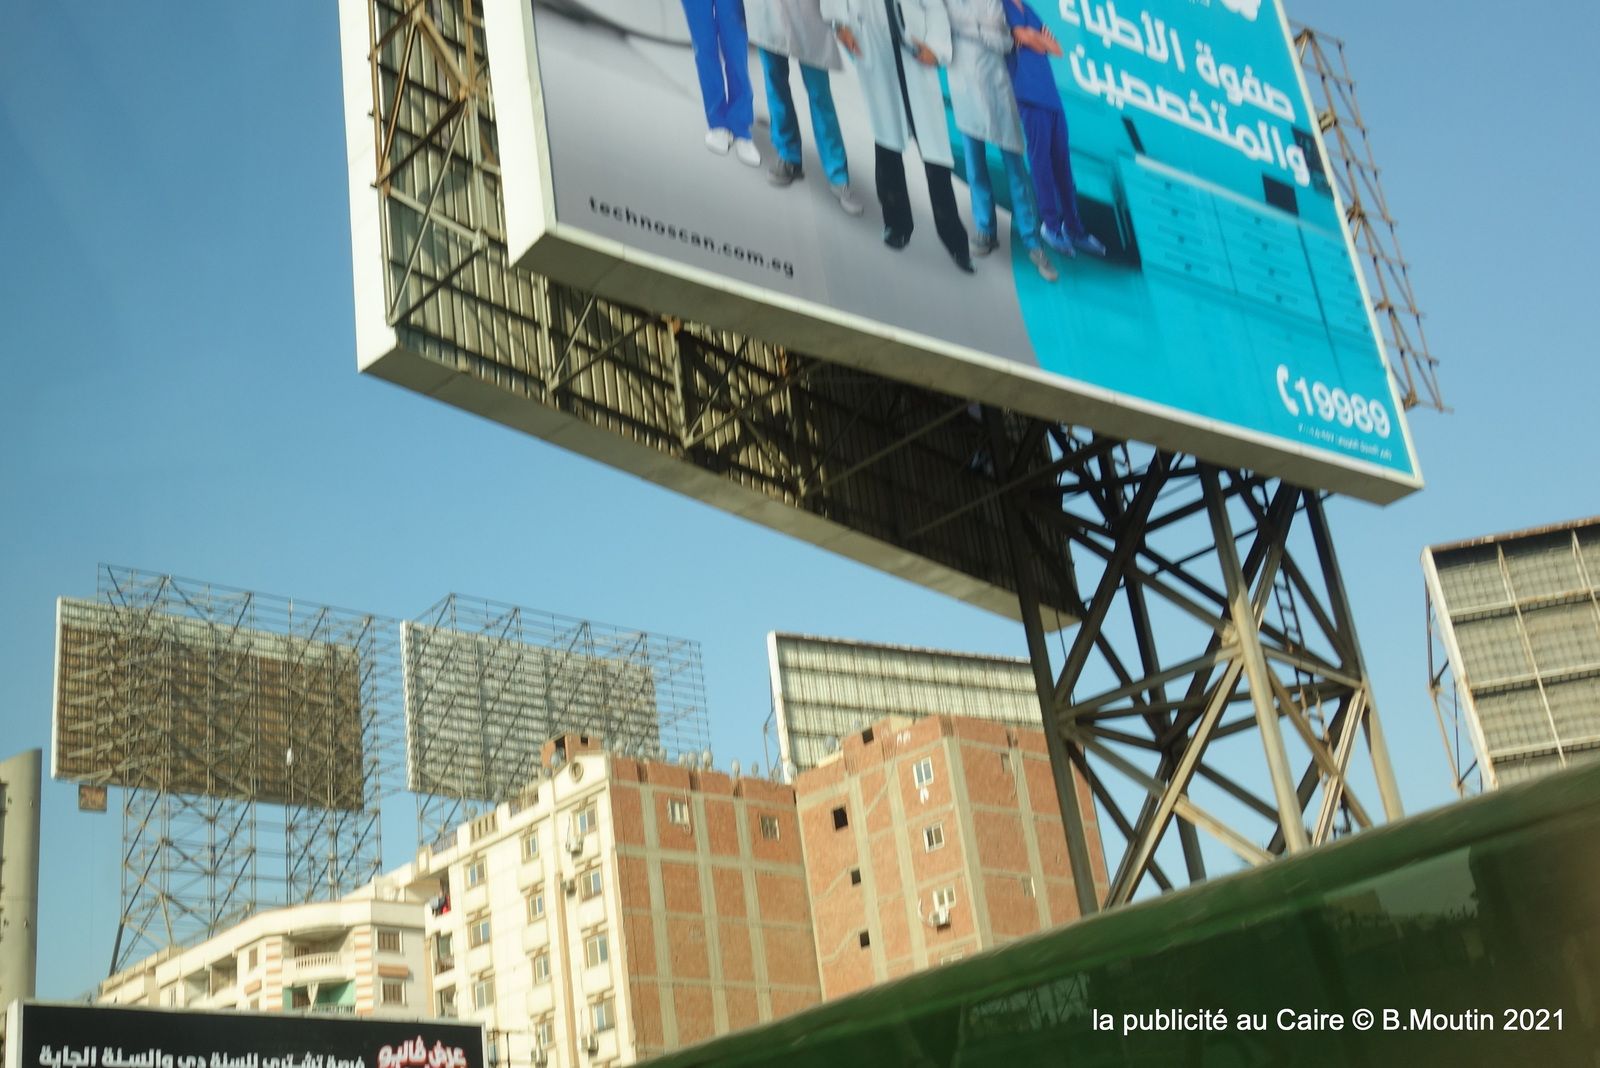 Le Caire et ses panneaux publicitaires géants (16 photos)